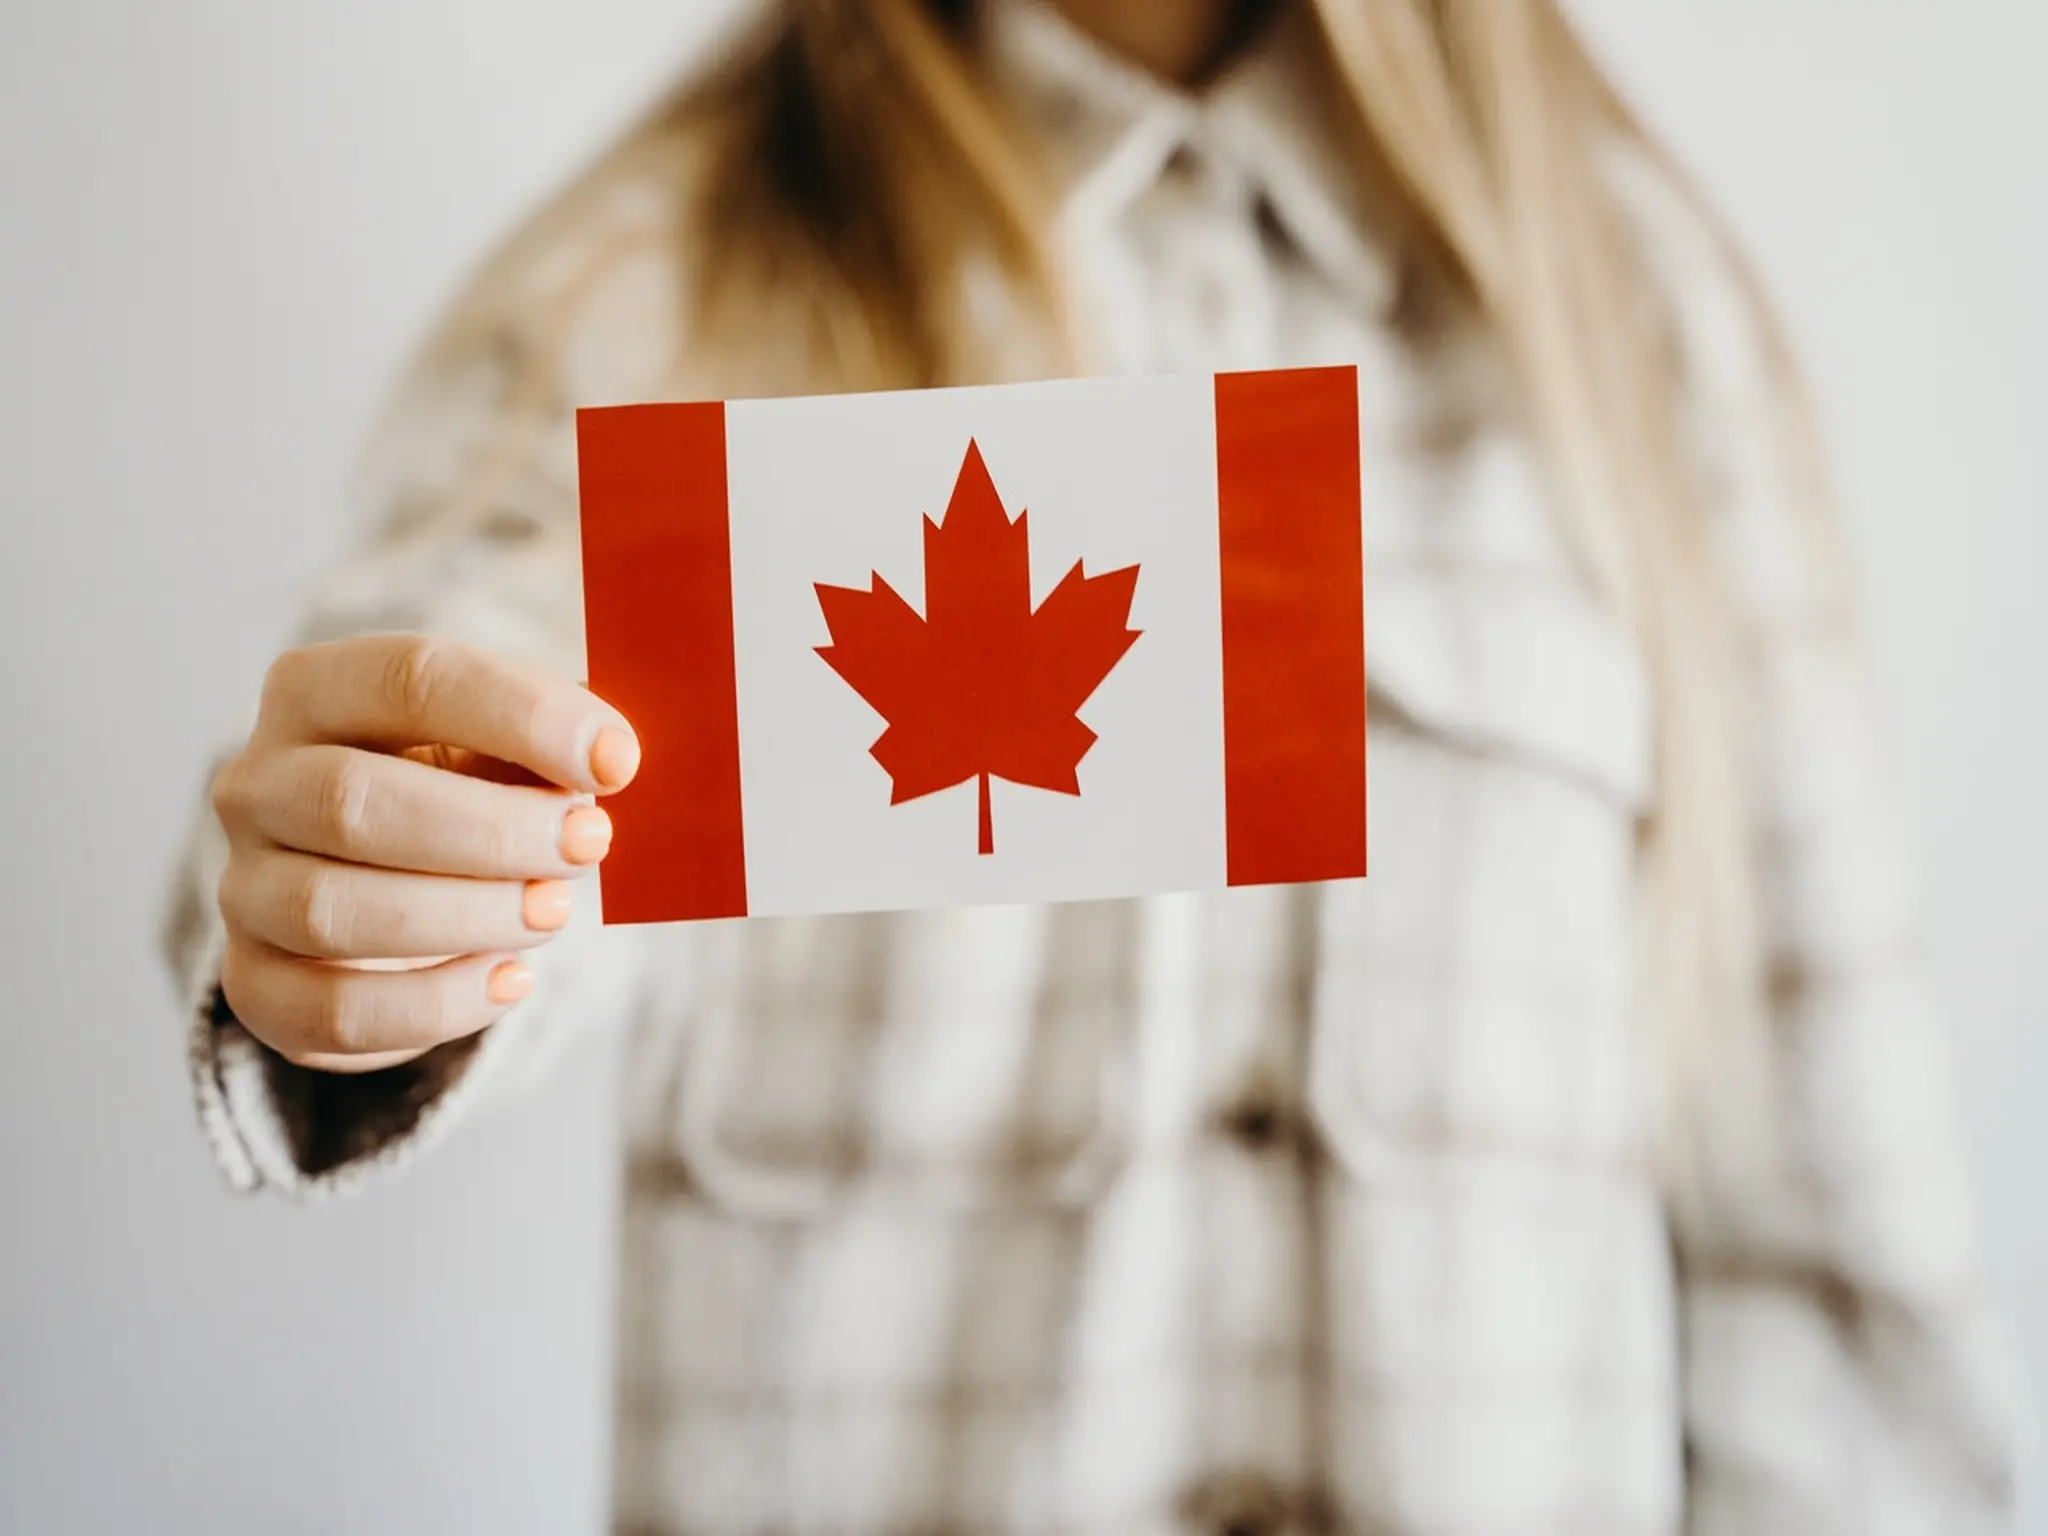 كندا تحدد التكلفة المالية لقبول الهجرة إليها وحالات إعفاء المهاجرين منها